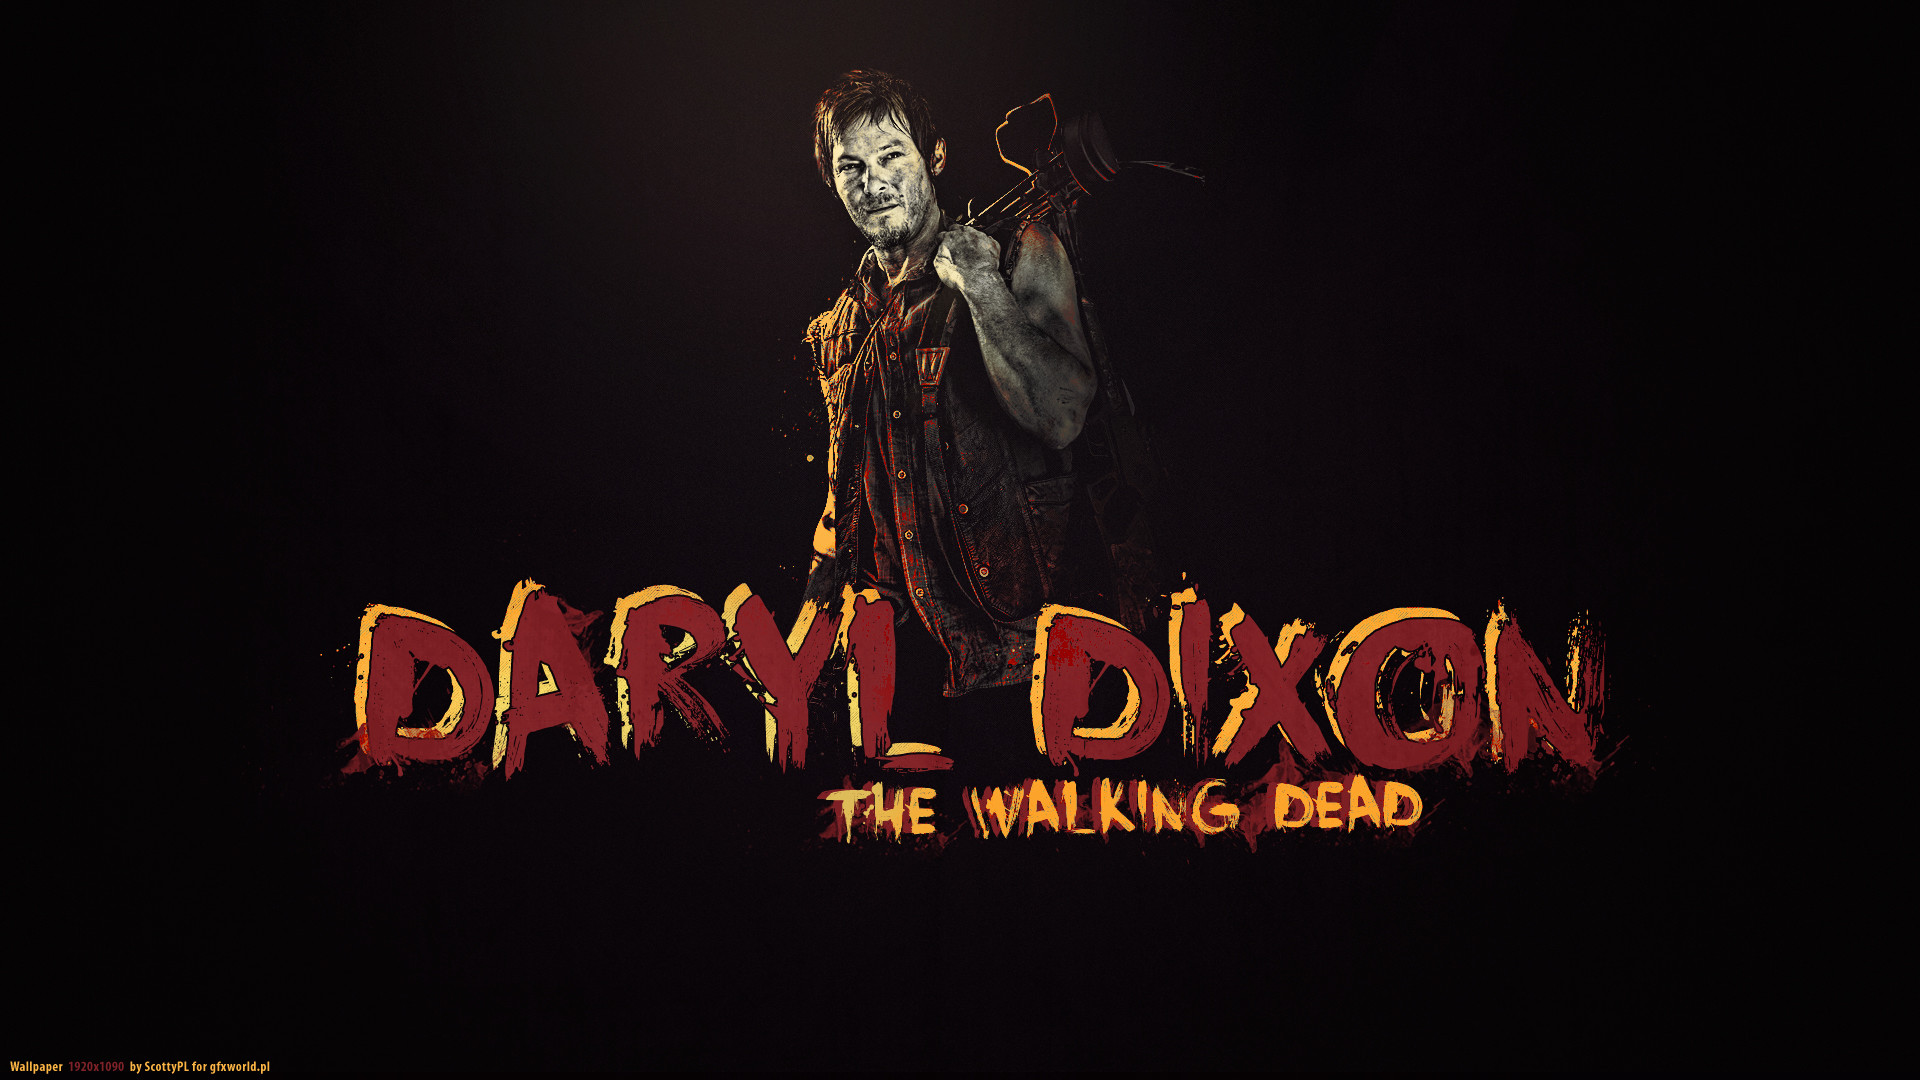 1920x1080 Walking Dead Daryl Wallpaper | ... Dead Daryl Dixon The Walking Dead Norman  Reedus